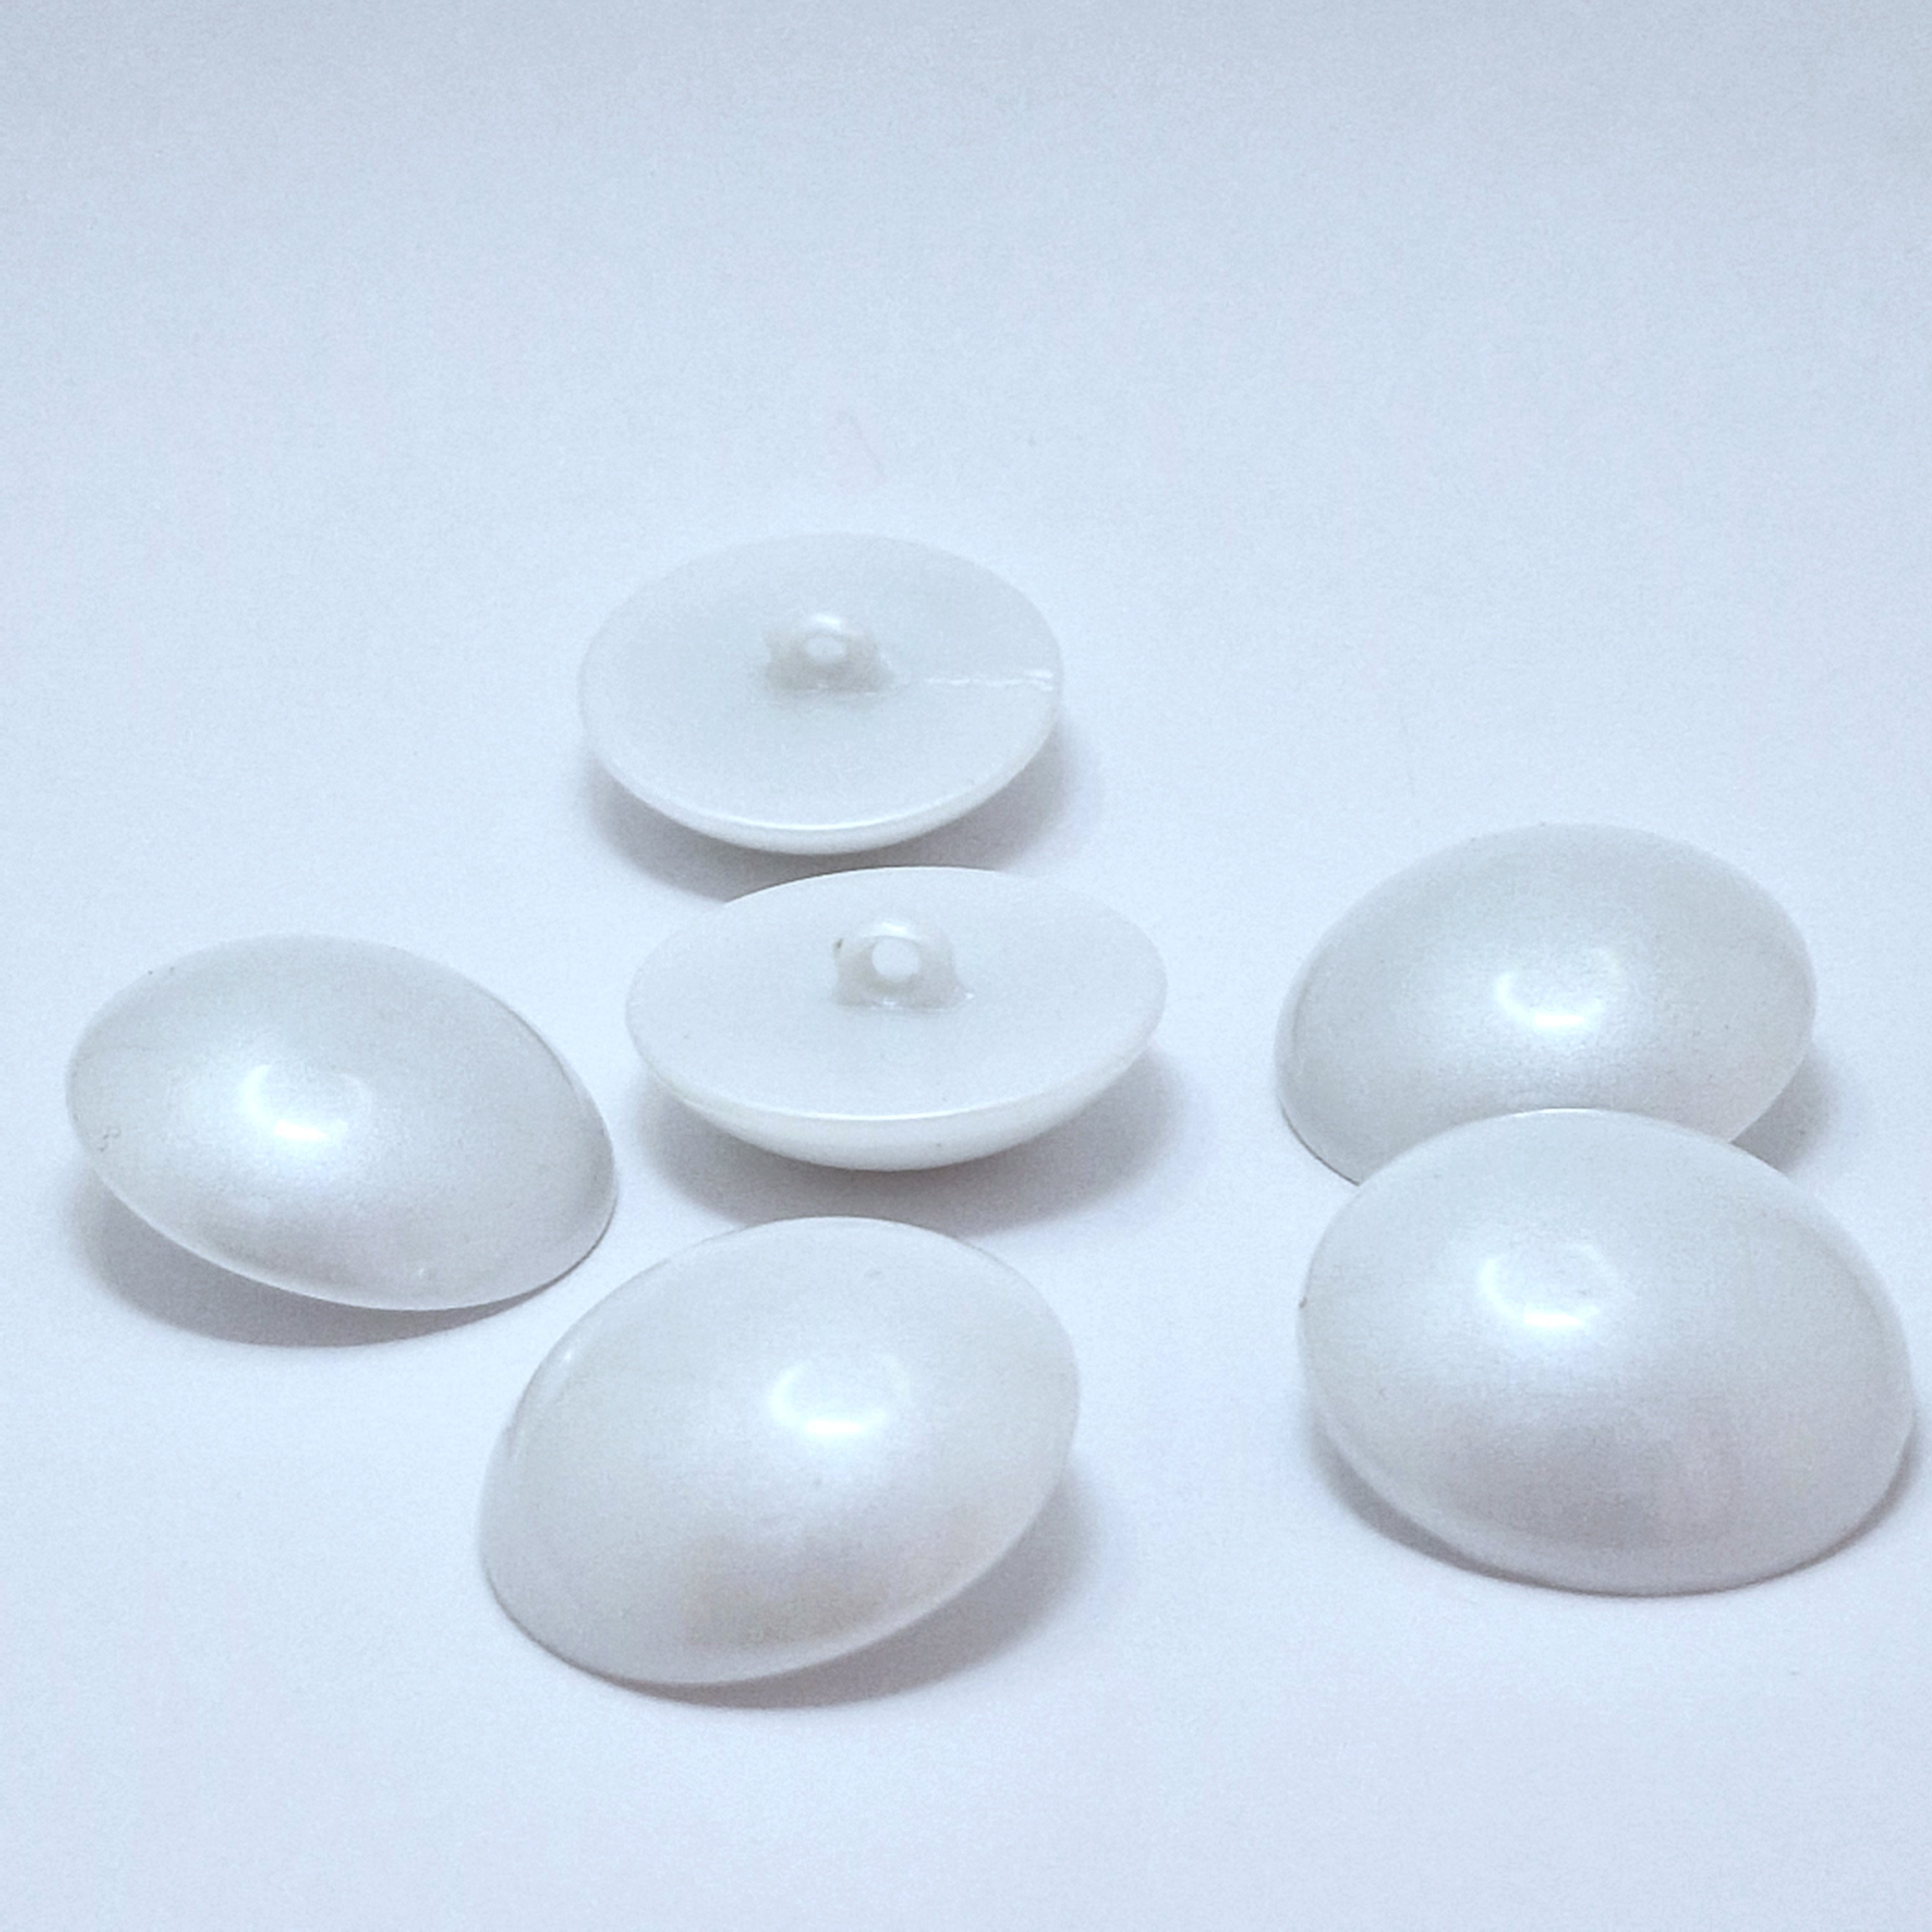 MajorCrafts 6pcs 30mm White 1-Hole Shank Acrylic Round Large Mushroom Buttons